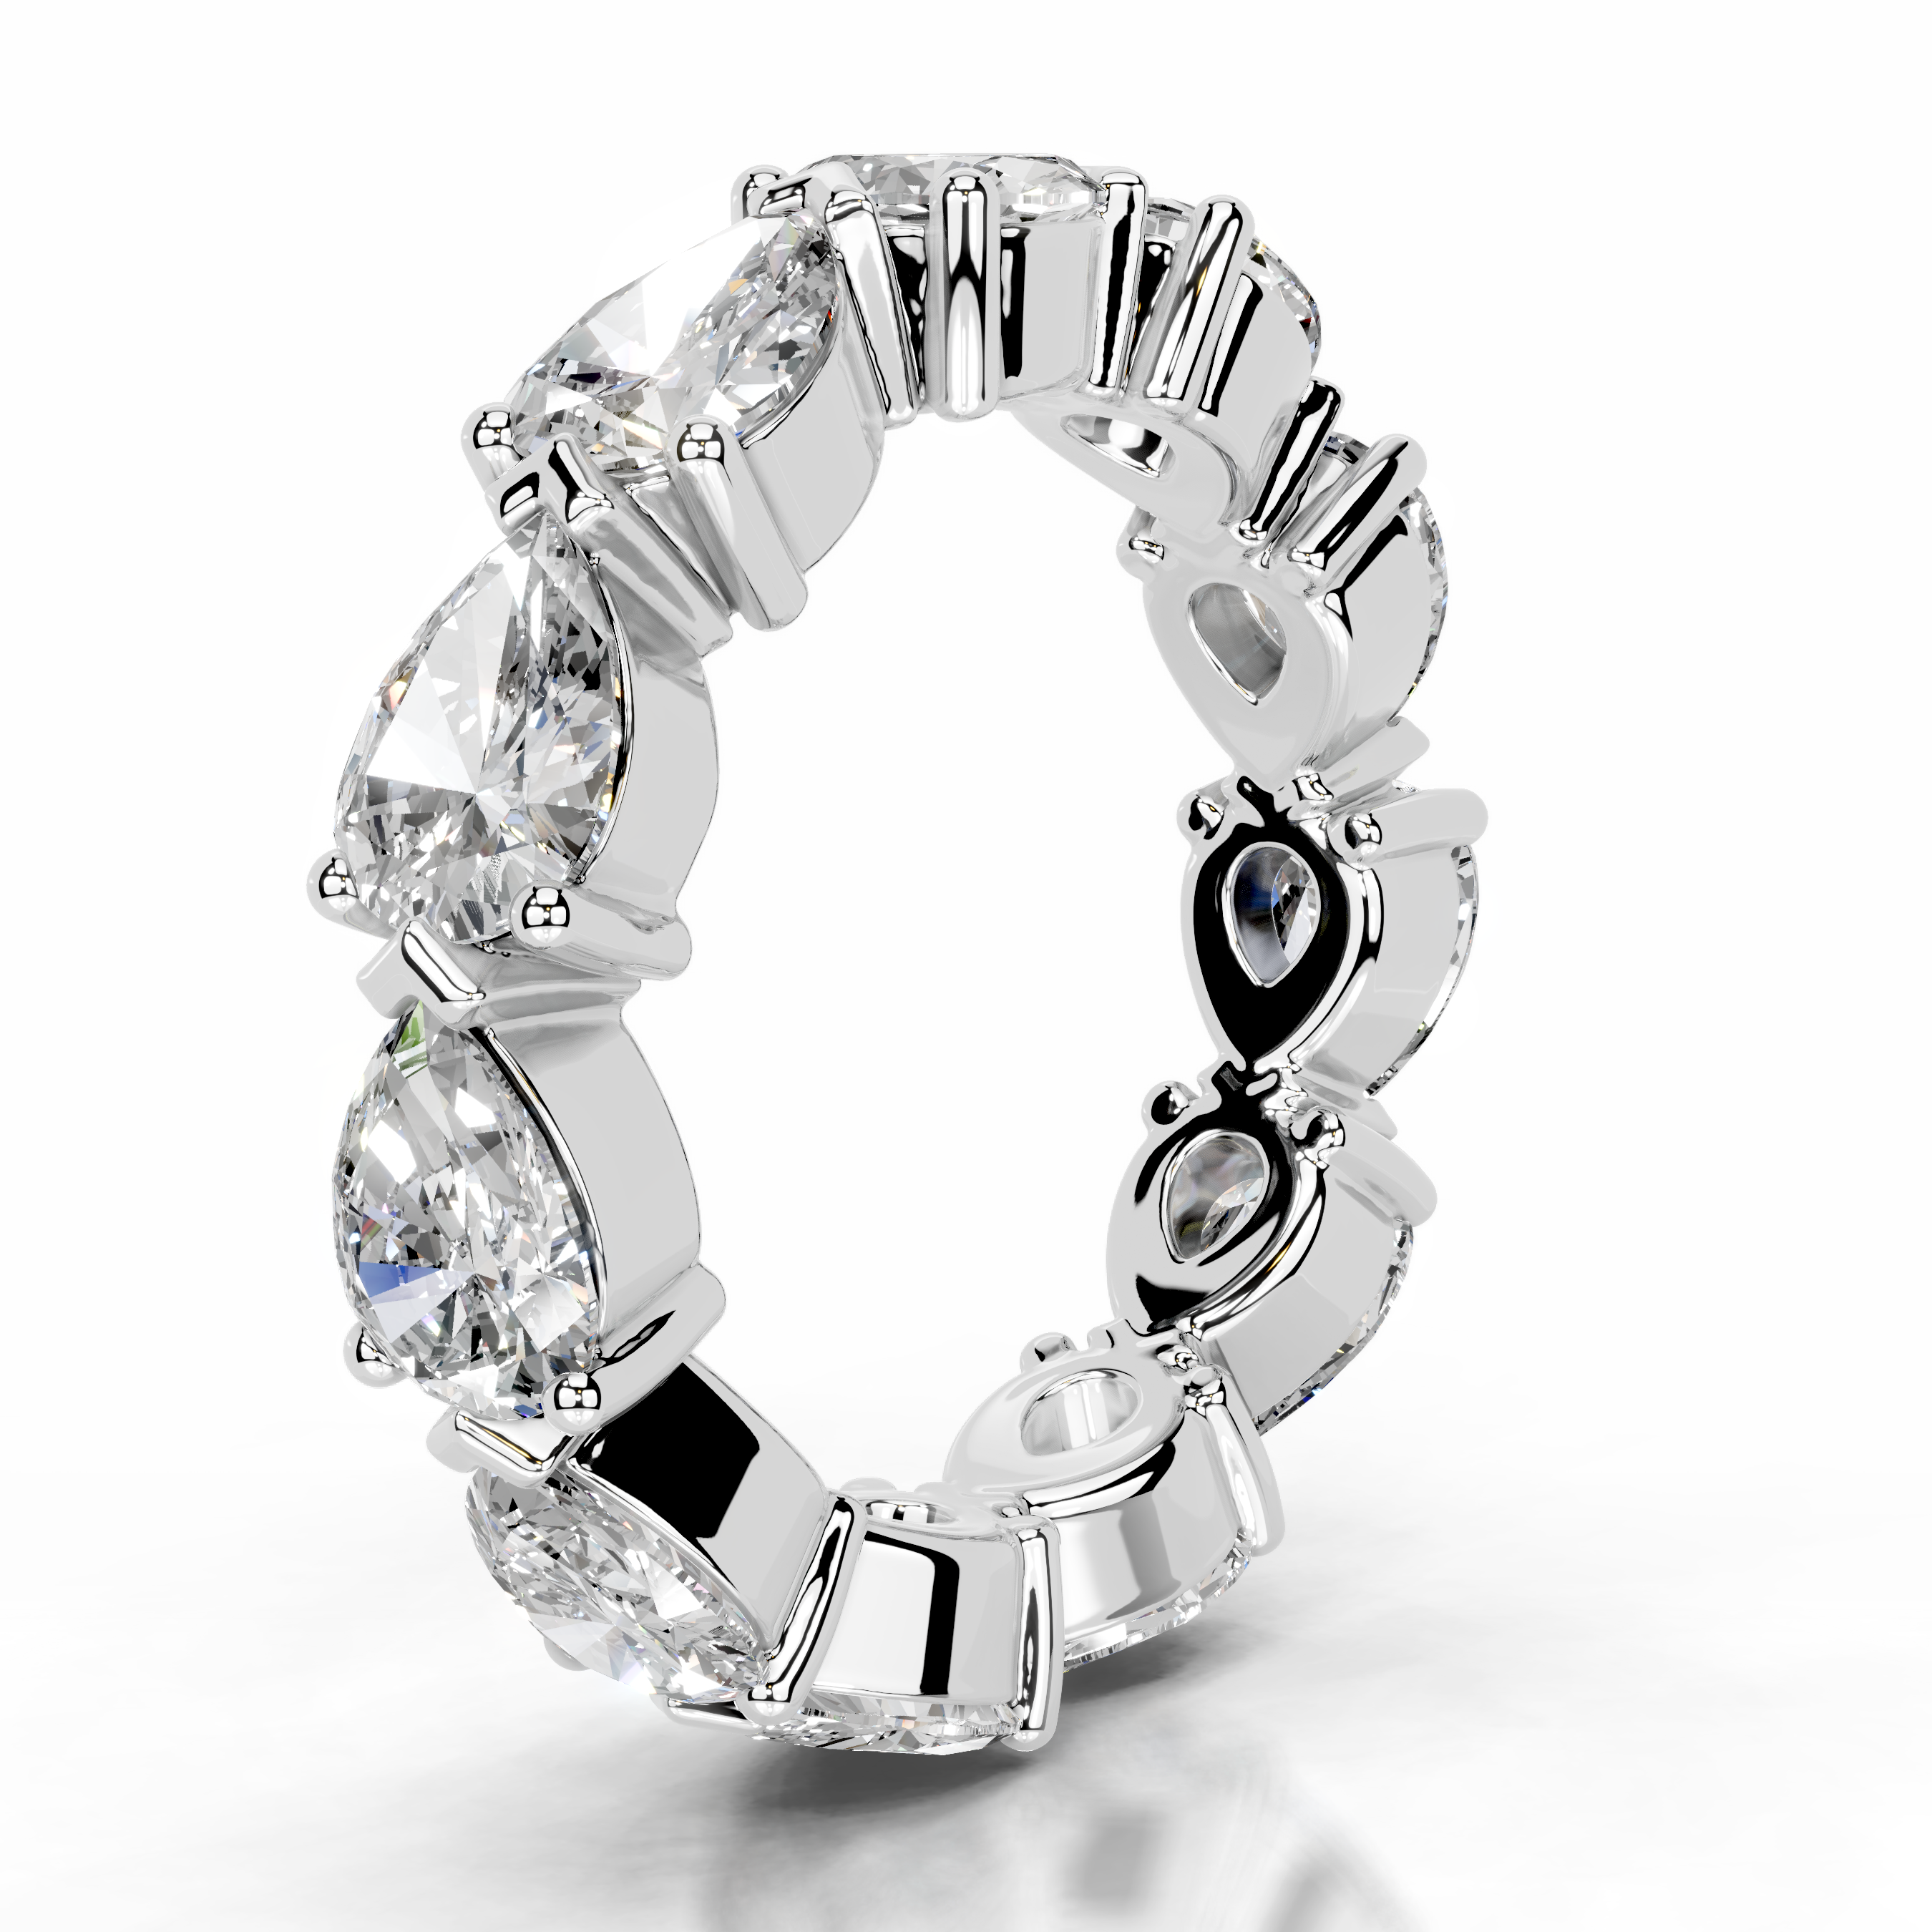 Tyrell Lab Grown Diamond Wedding Ring   (4.50 Carat) -14K White Gold